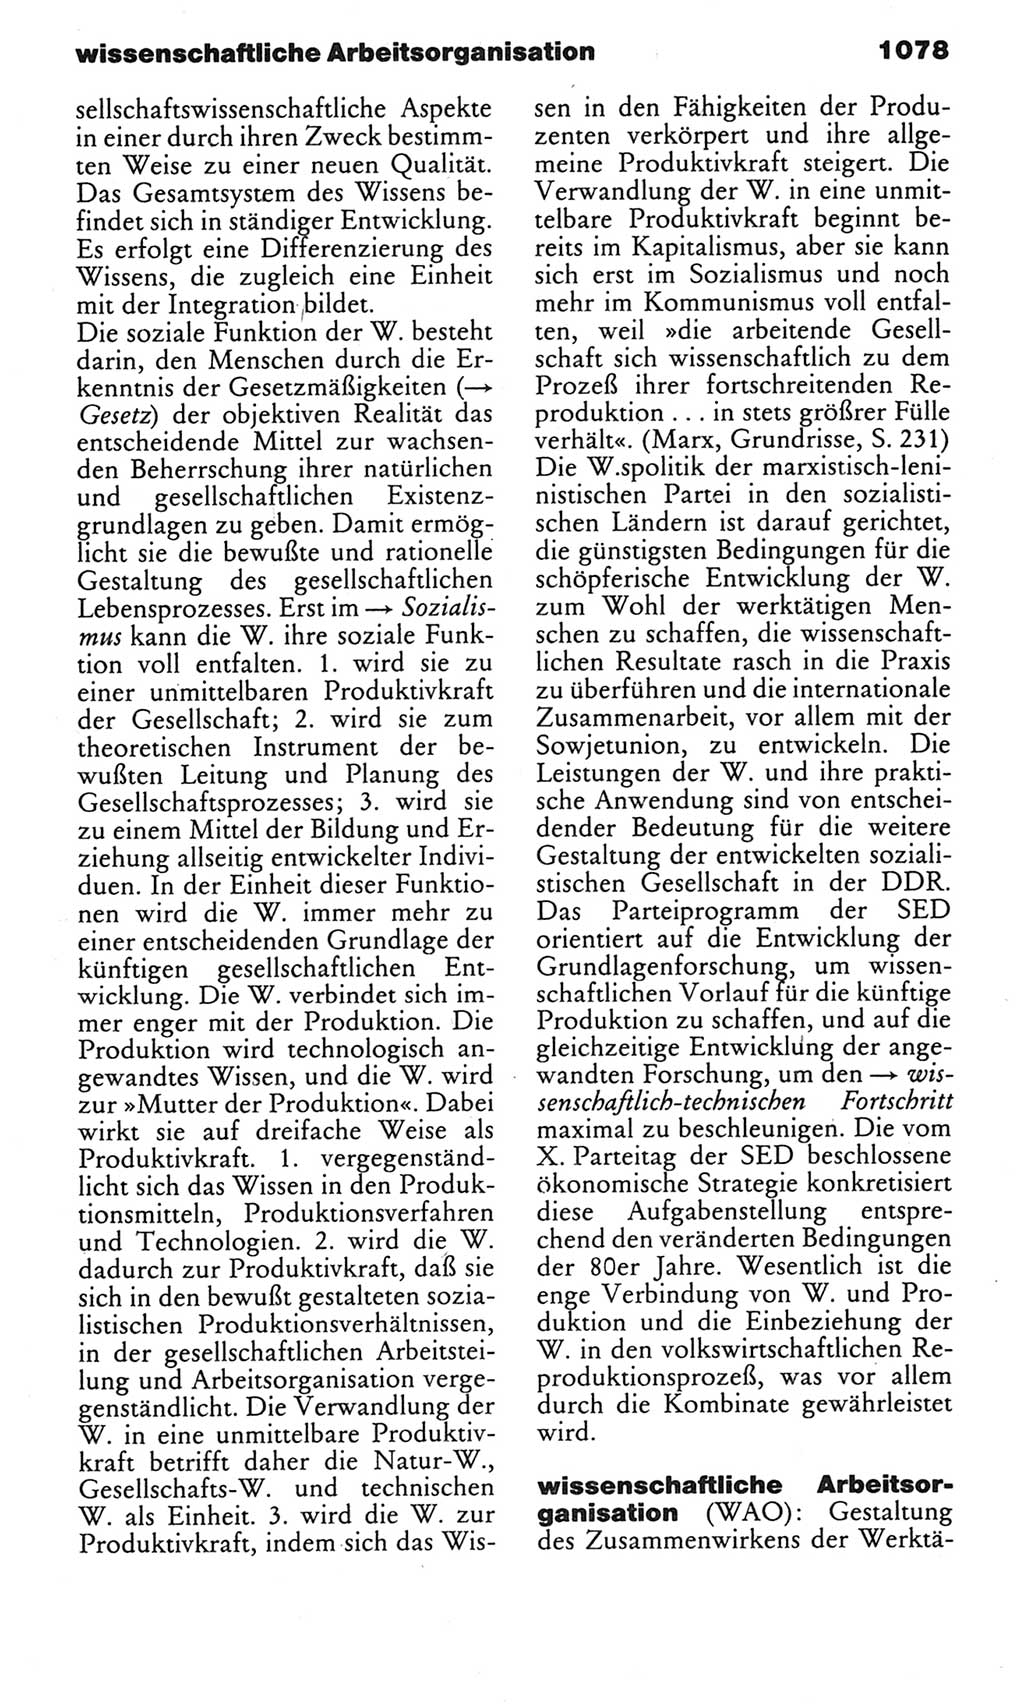 Kleines politisches Wörterbuch [Deutsche Demokratische Republik (DDR)] 1983, Seite 1078 (Kl. pol. Wb. DDR 1983, S. 1078)